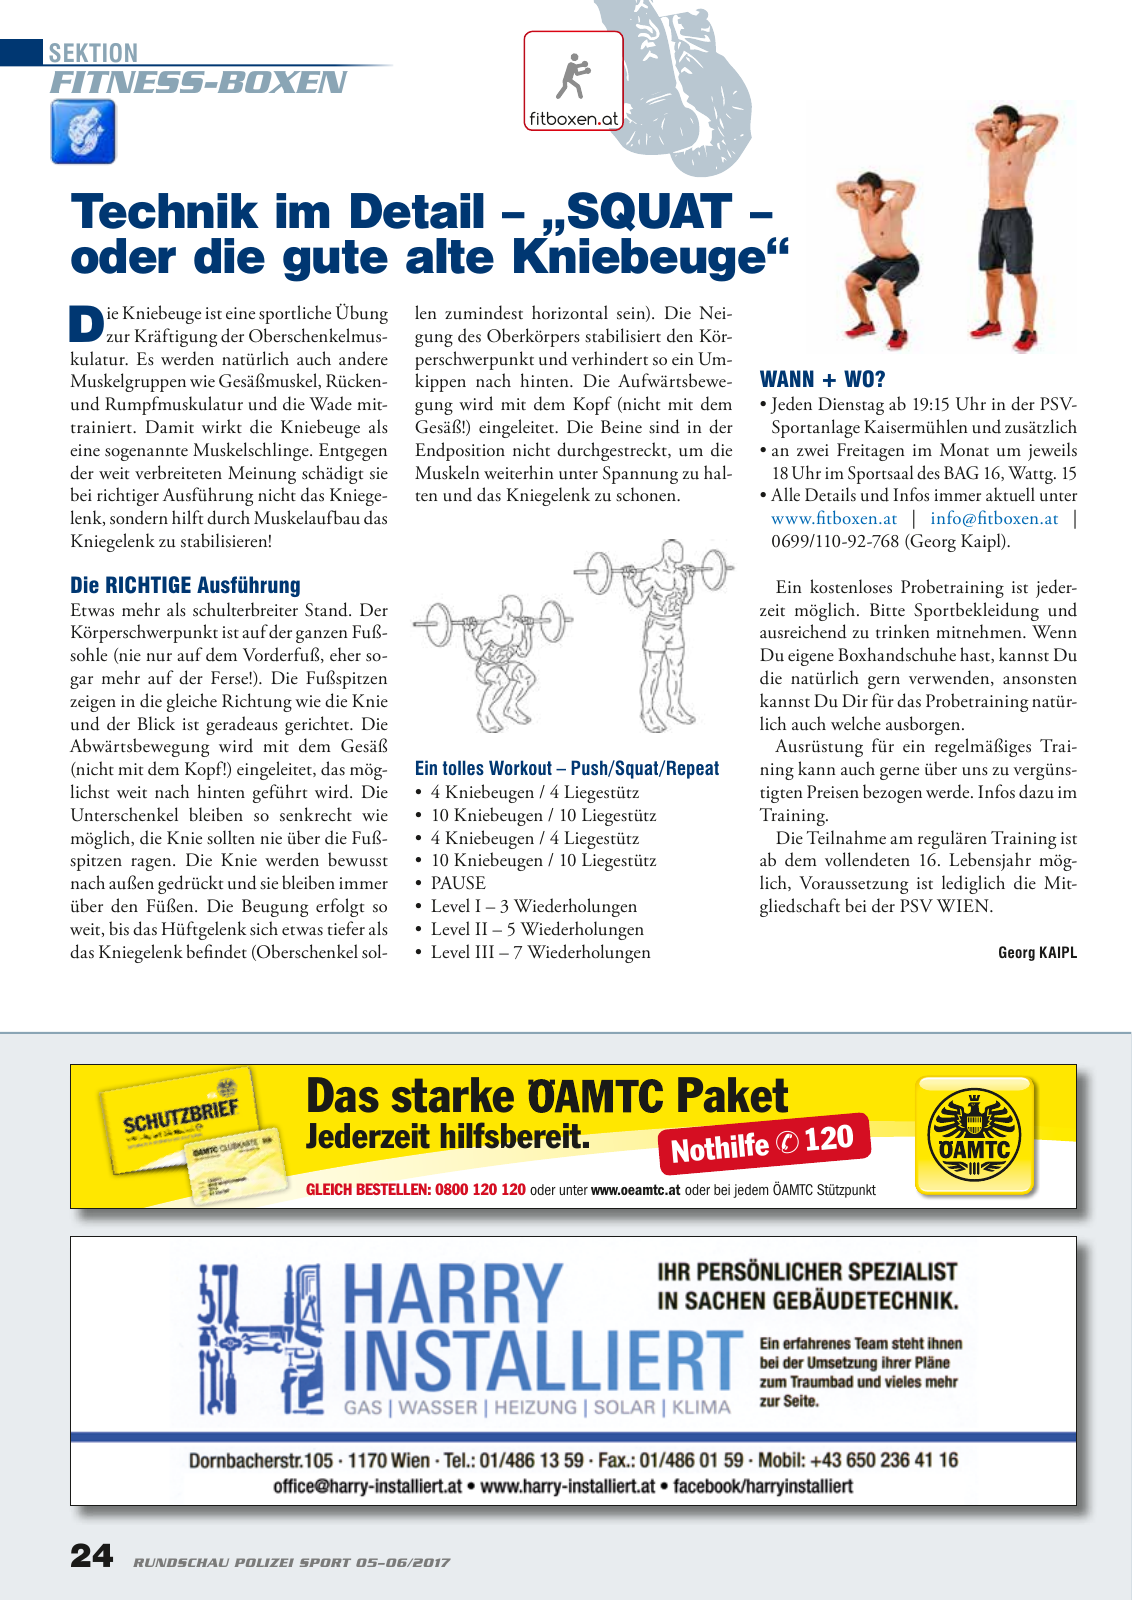 Vorschau Rundschau Polizei Sport 05-06/2017 Seite 24